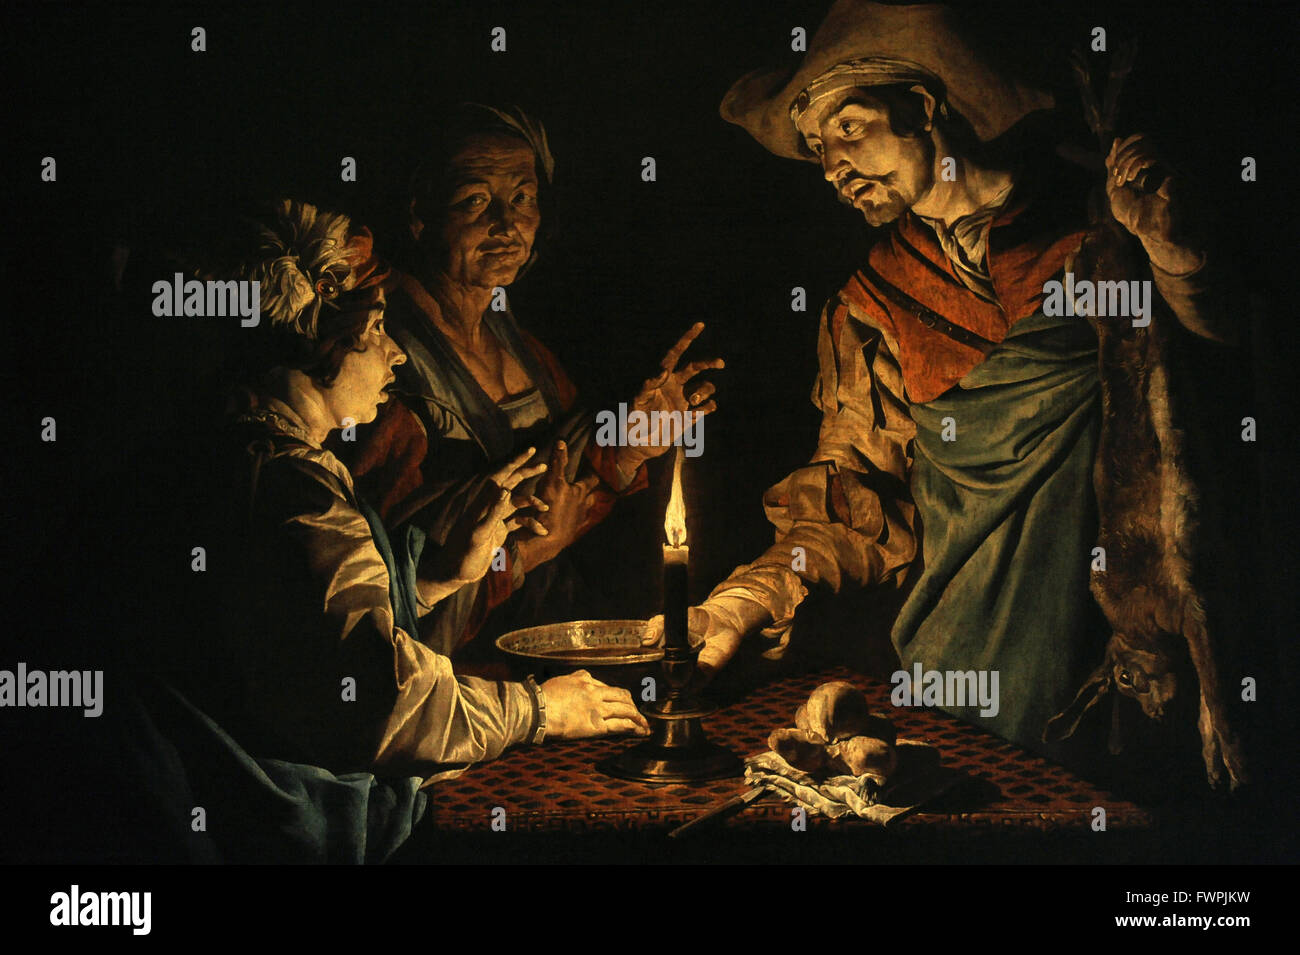 Matthias Stom (1600-1672). Niederländischer Maler. Esau und Jakob, 1640 s. Die Eremitage. Sankt Petersburg. Russland. Stockfoto